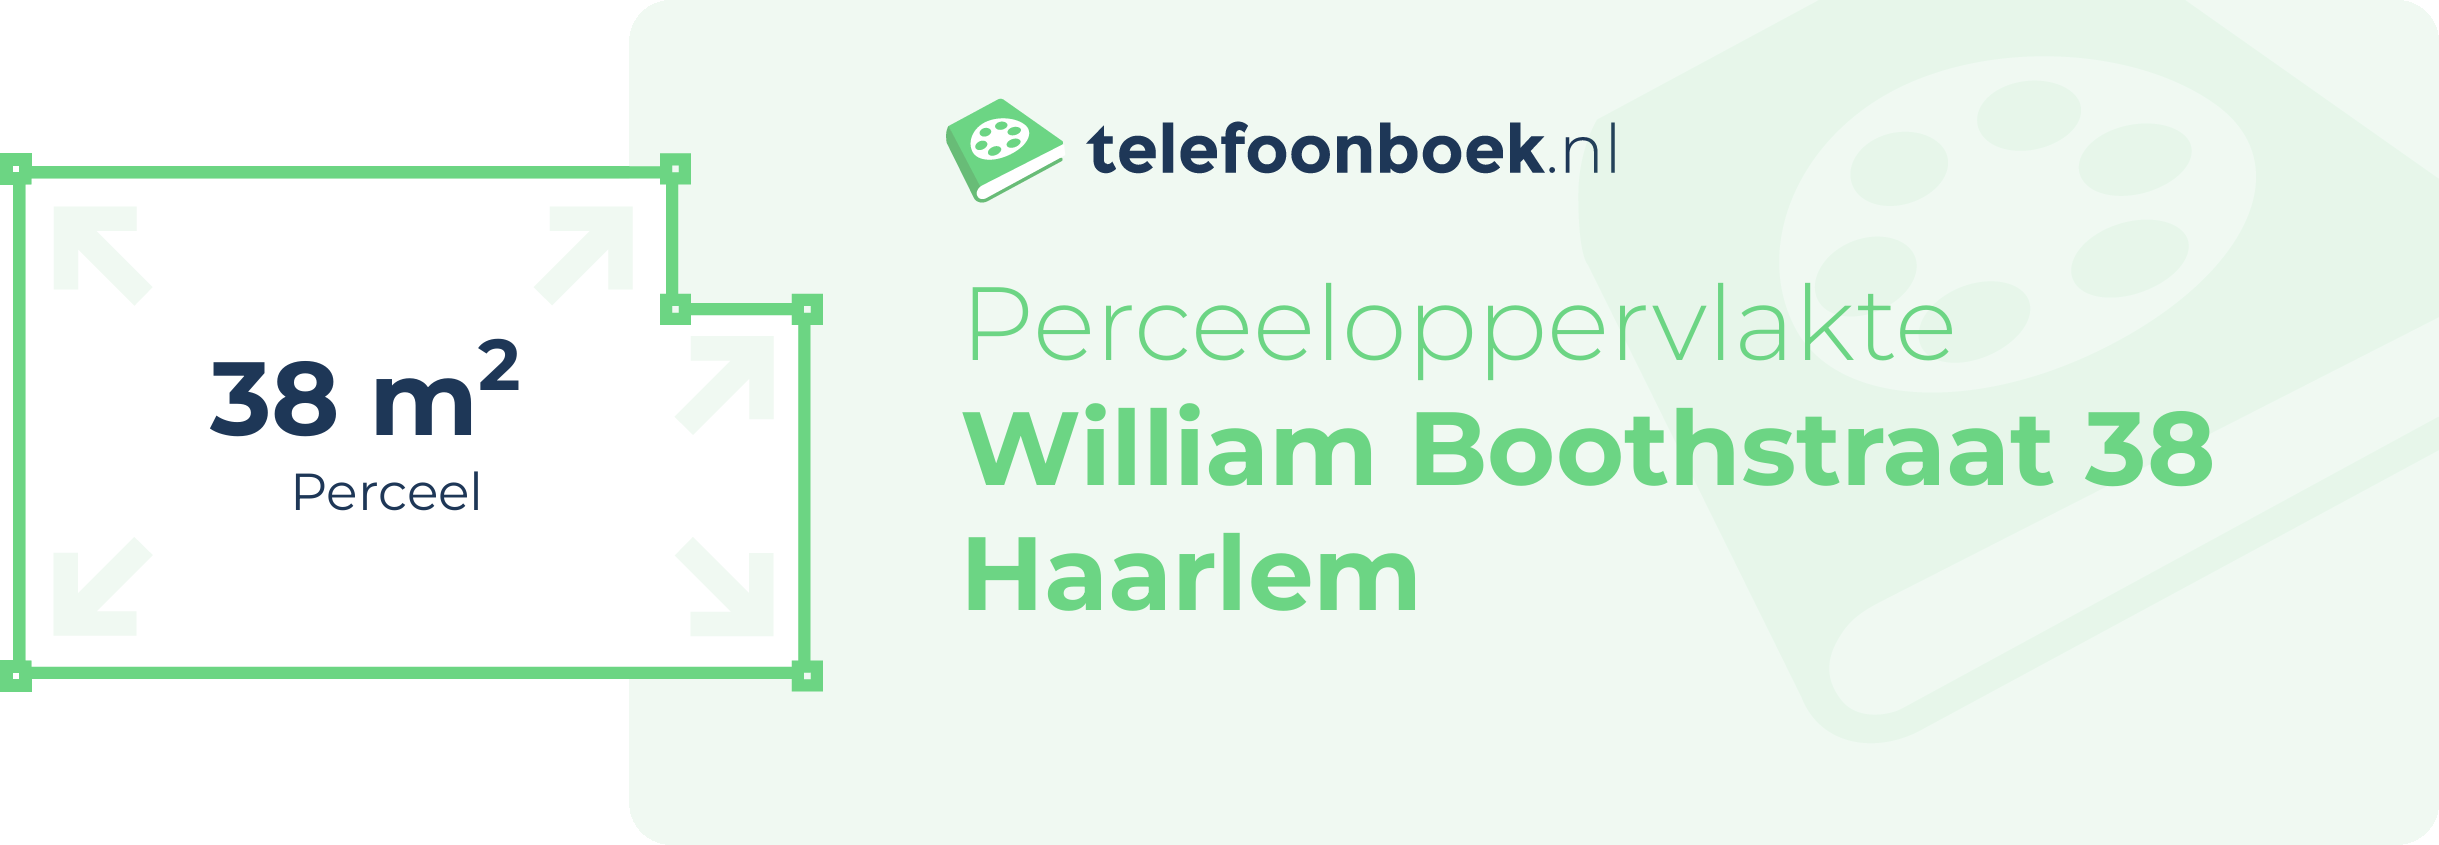 Perceeloppervlakte William Boothstraat 38 Haarlem